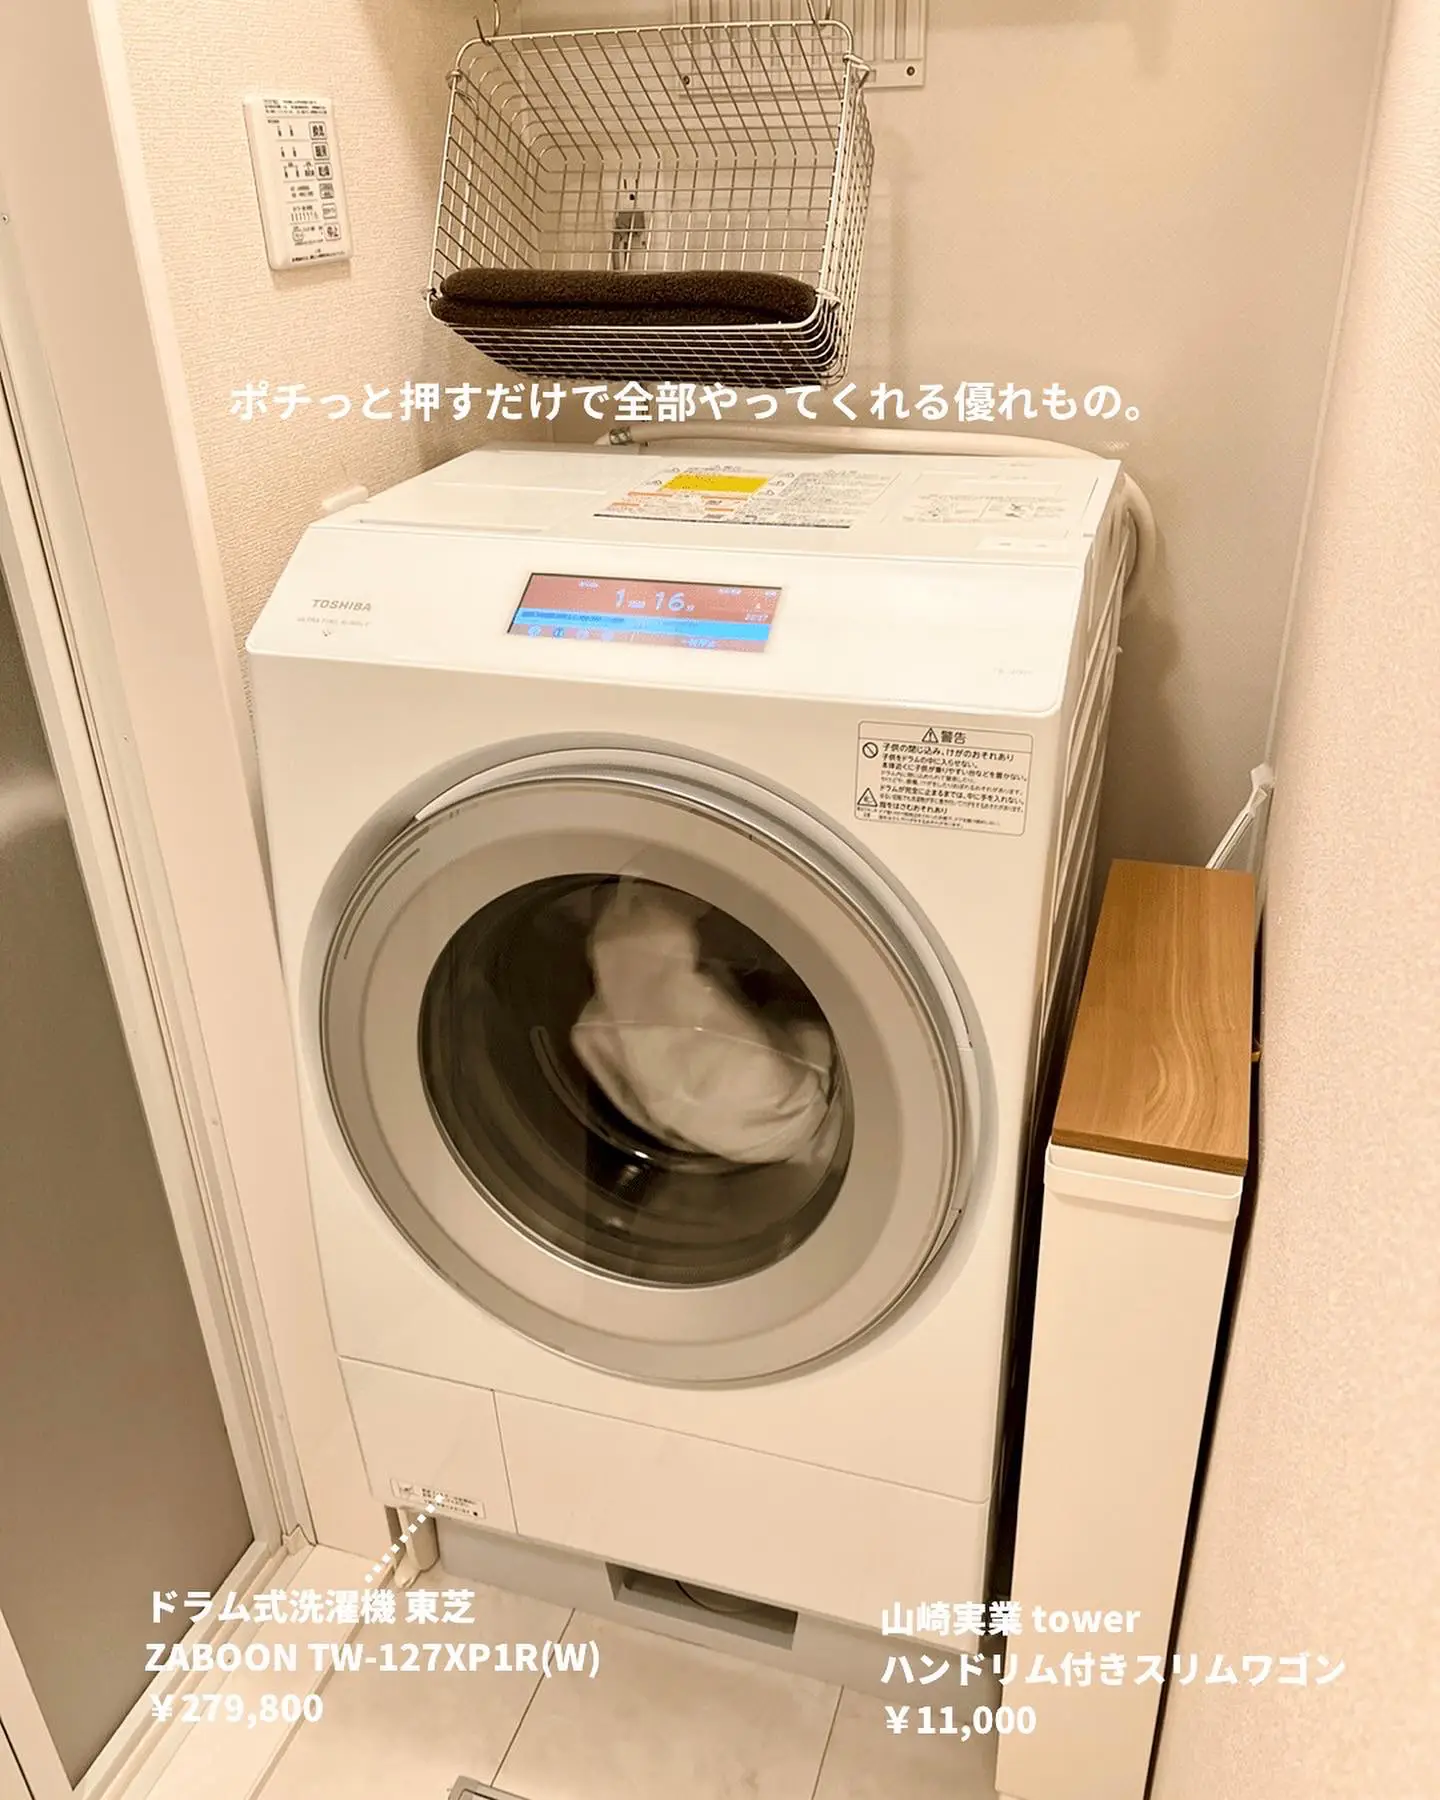 【ふたり暮らし】20代夫婦の洗濯事情の画像 (3枚目)